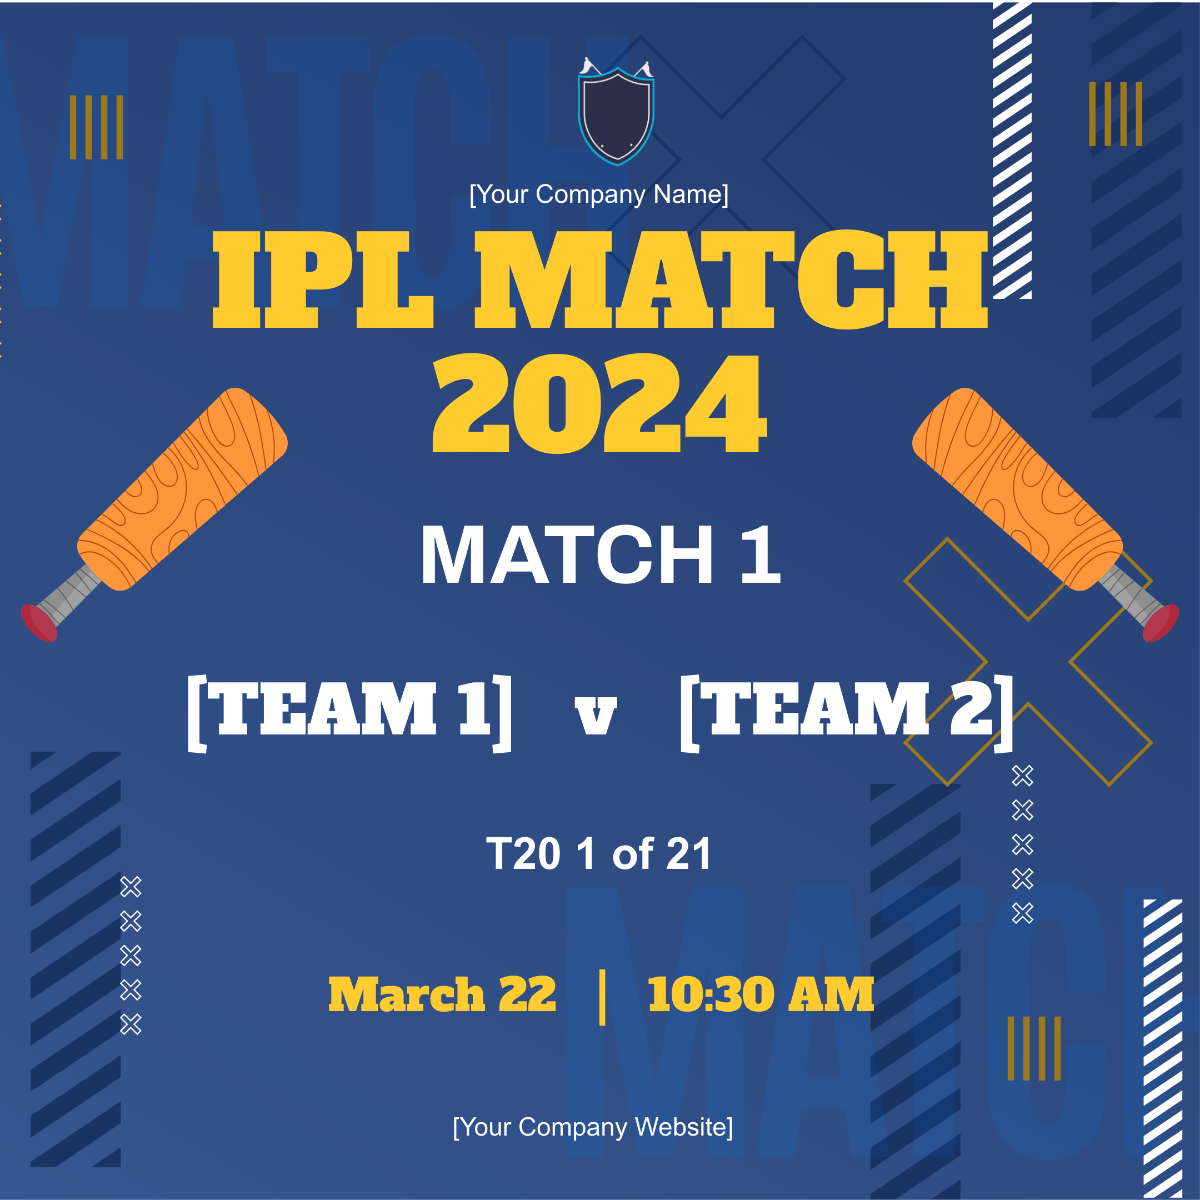 IPL Match 2024 Template